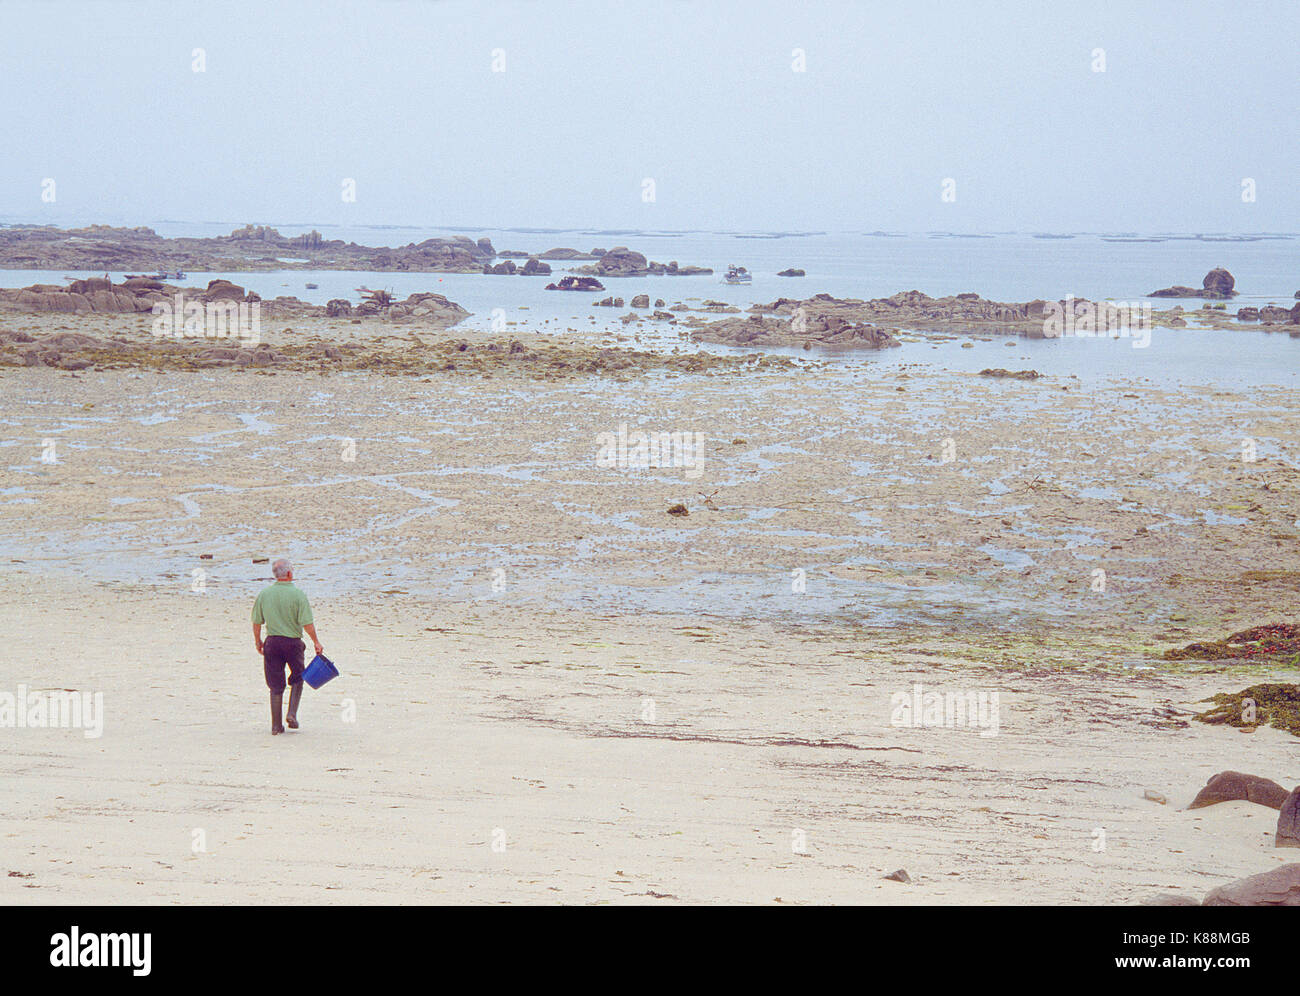 Les fruits de catcher à marcher le long de la plage à marée basse. Carreiron réserve naturelle, l'île d'Arosa, province de Pontevedra, Galice, Espagne. Banque D'Images